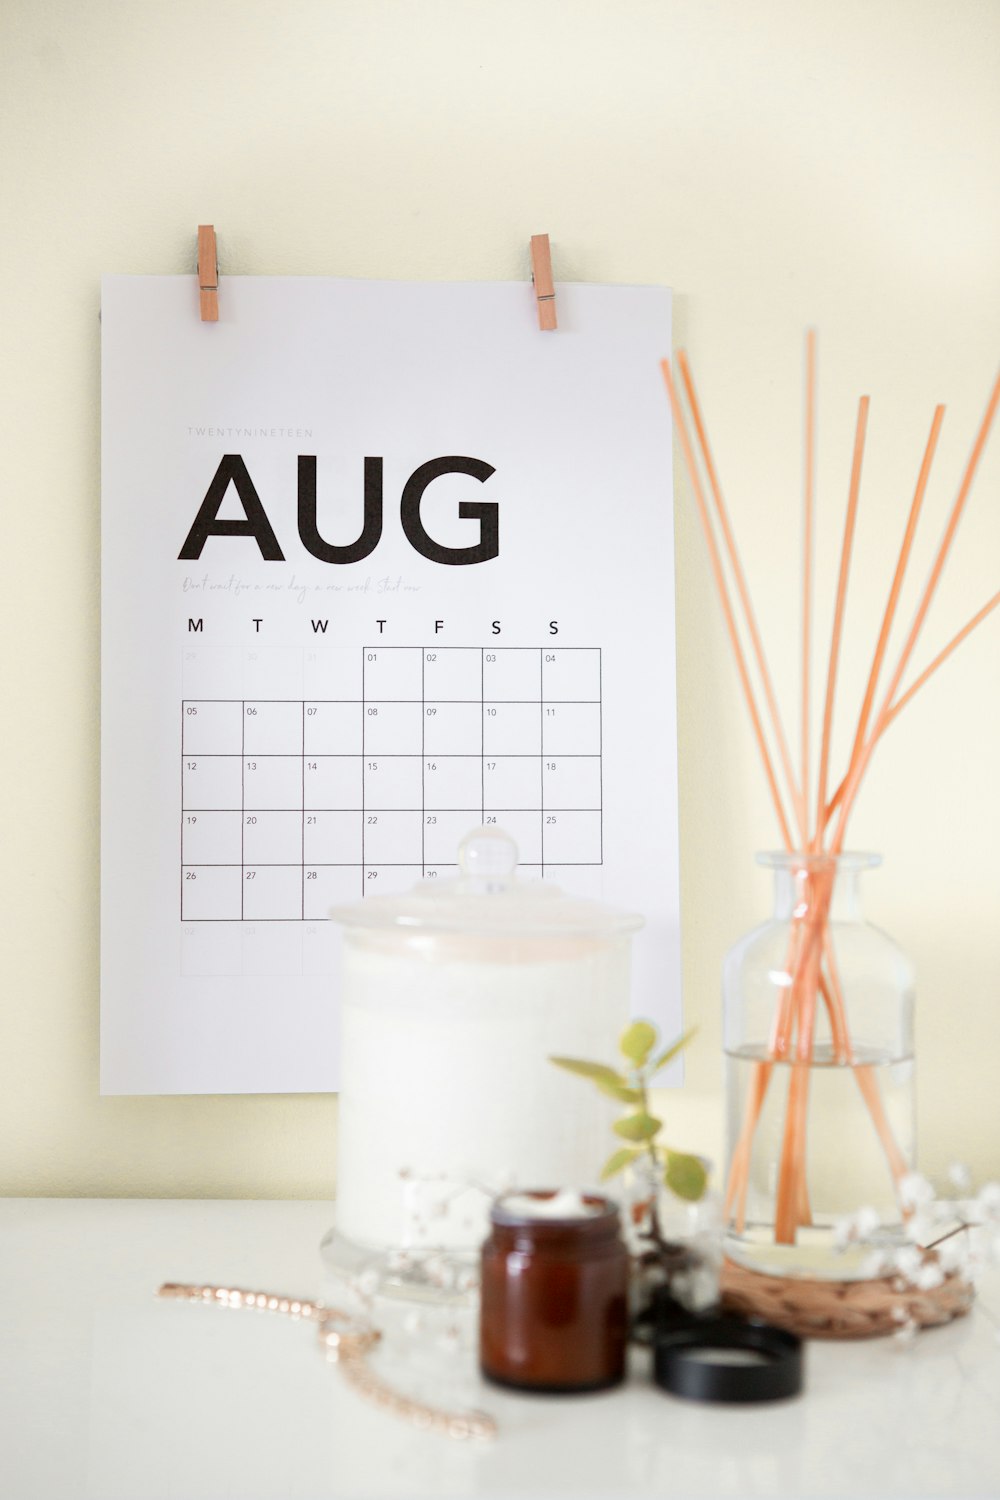 Aug calendar on wall